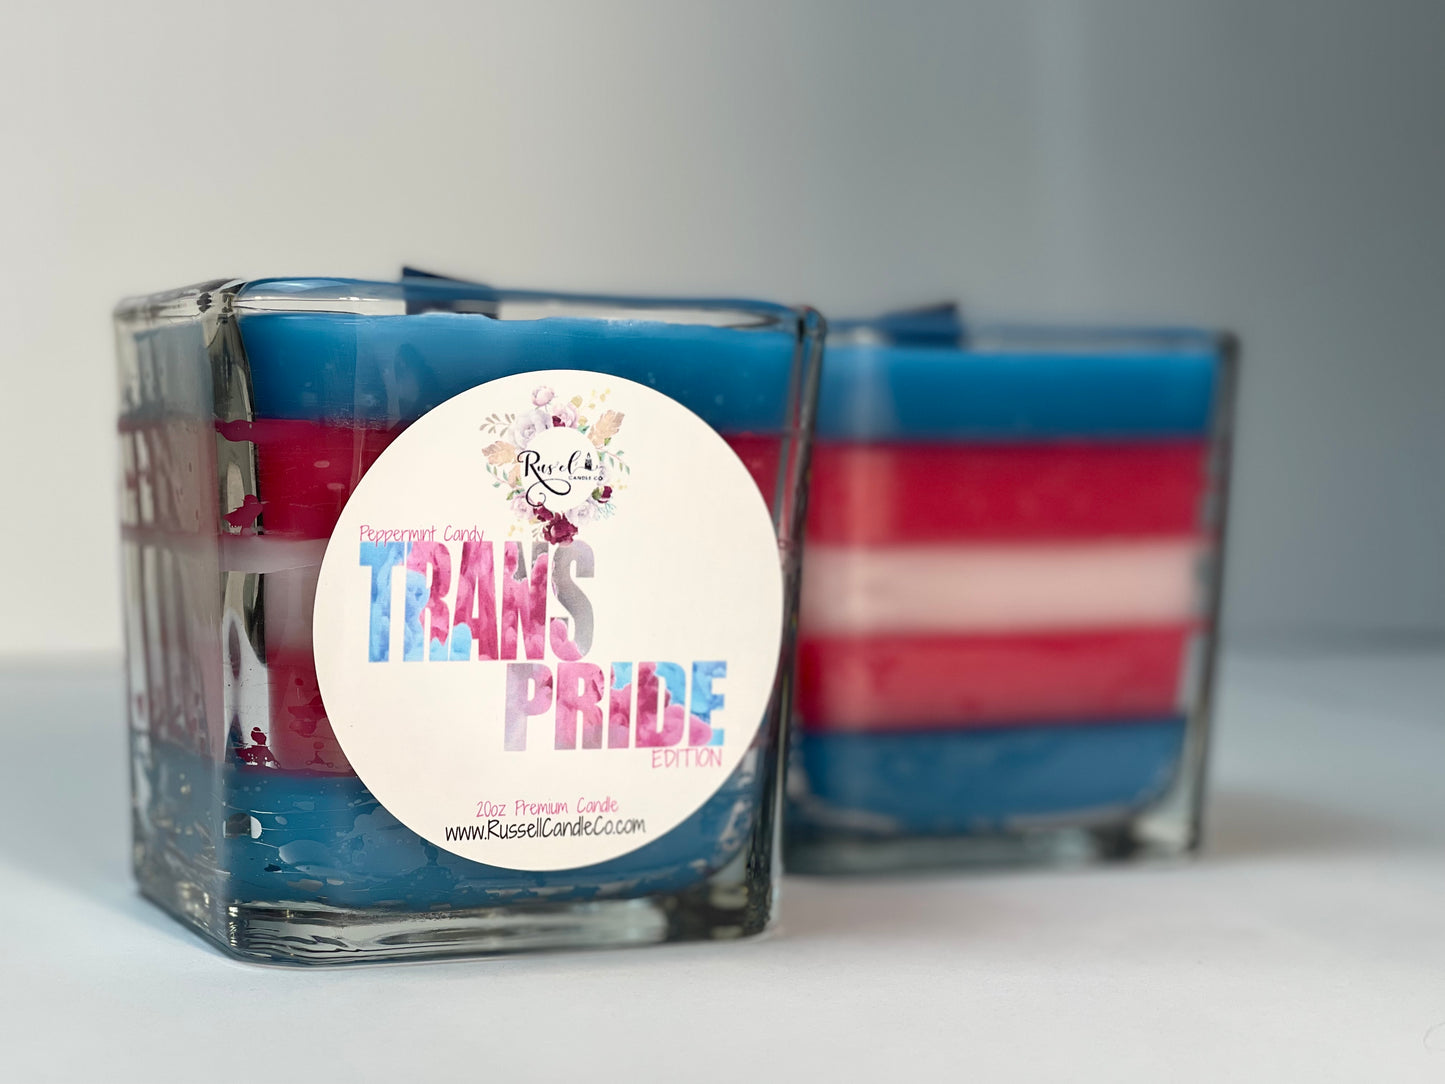 Trans Pride Premium Candle